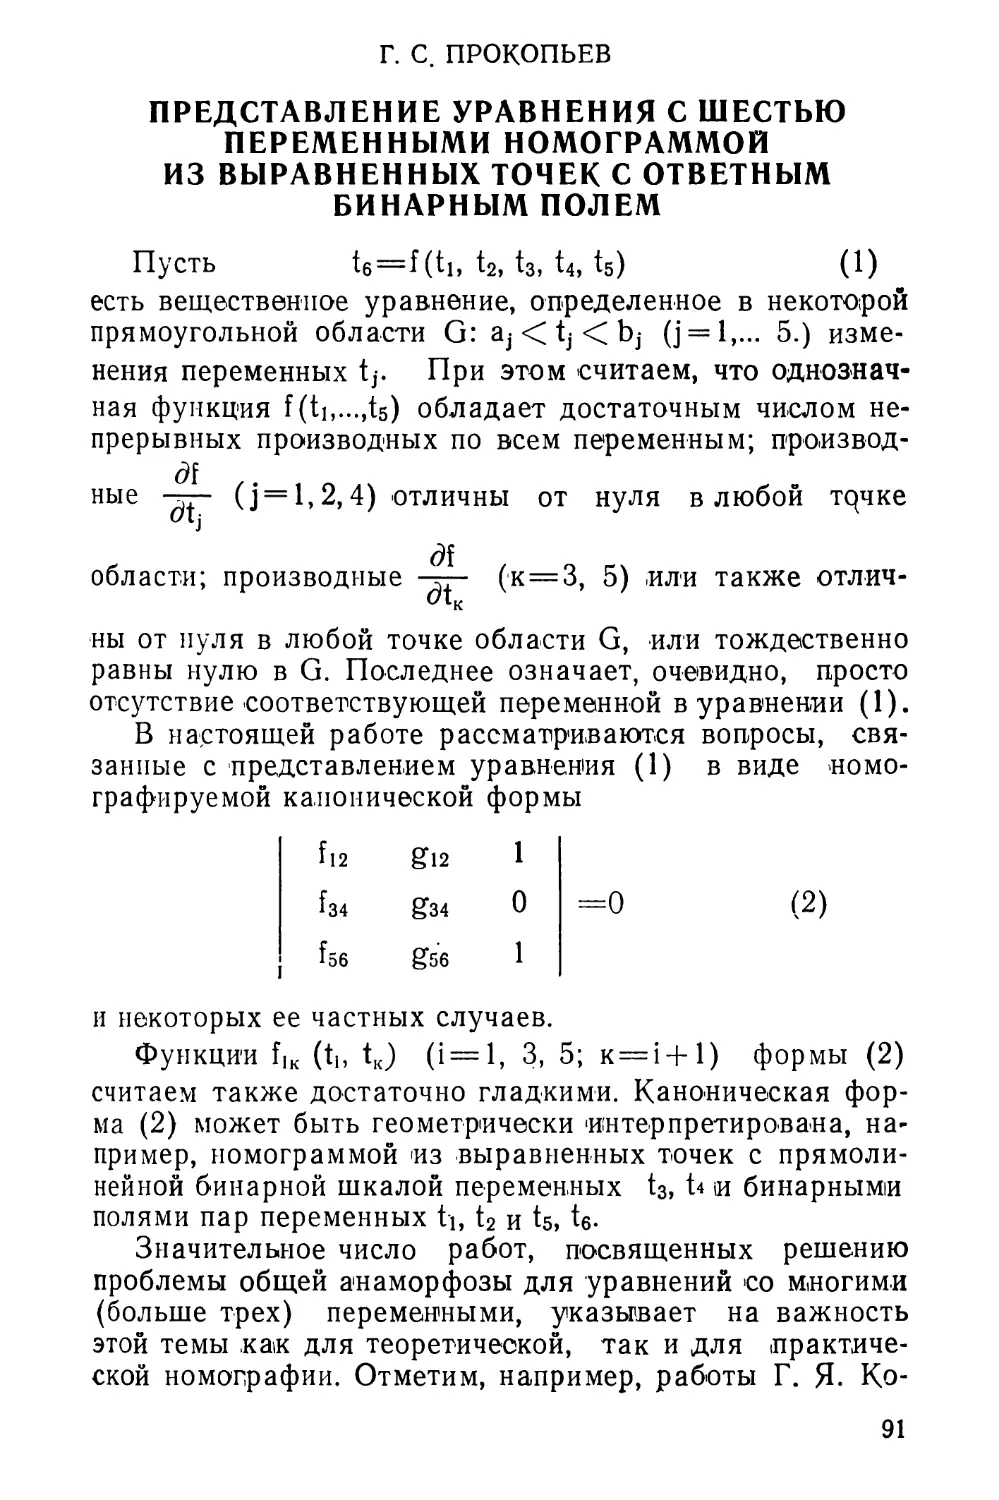 Г. С. Прокопьев. Представление уравнения с шестью переменными номограммой из выравненных точек с ответным бинарным полем